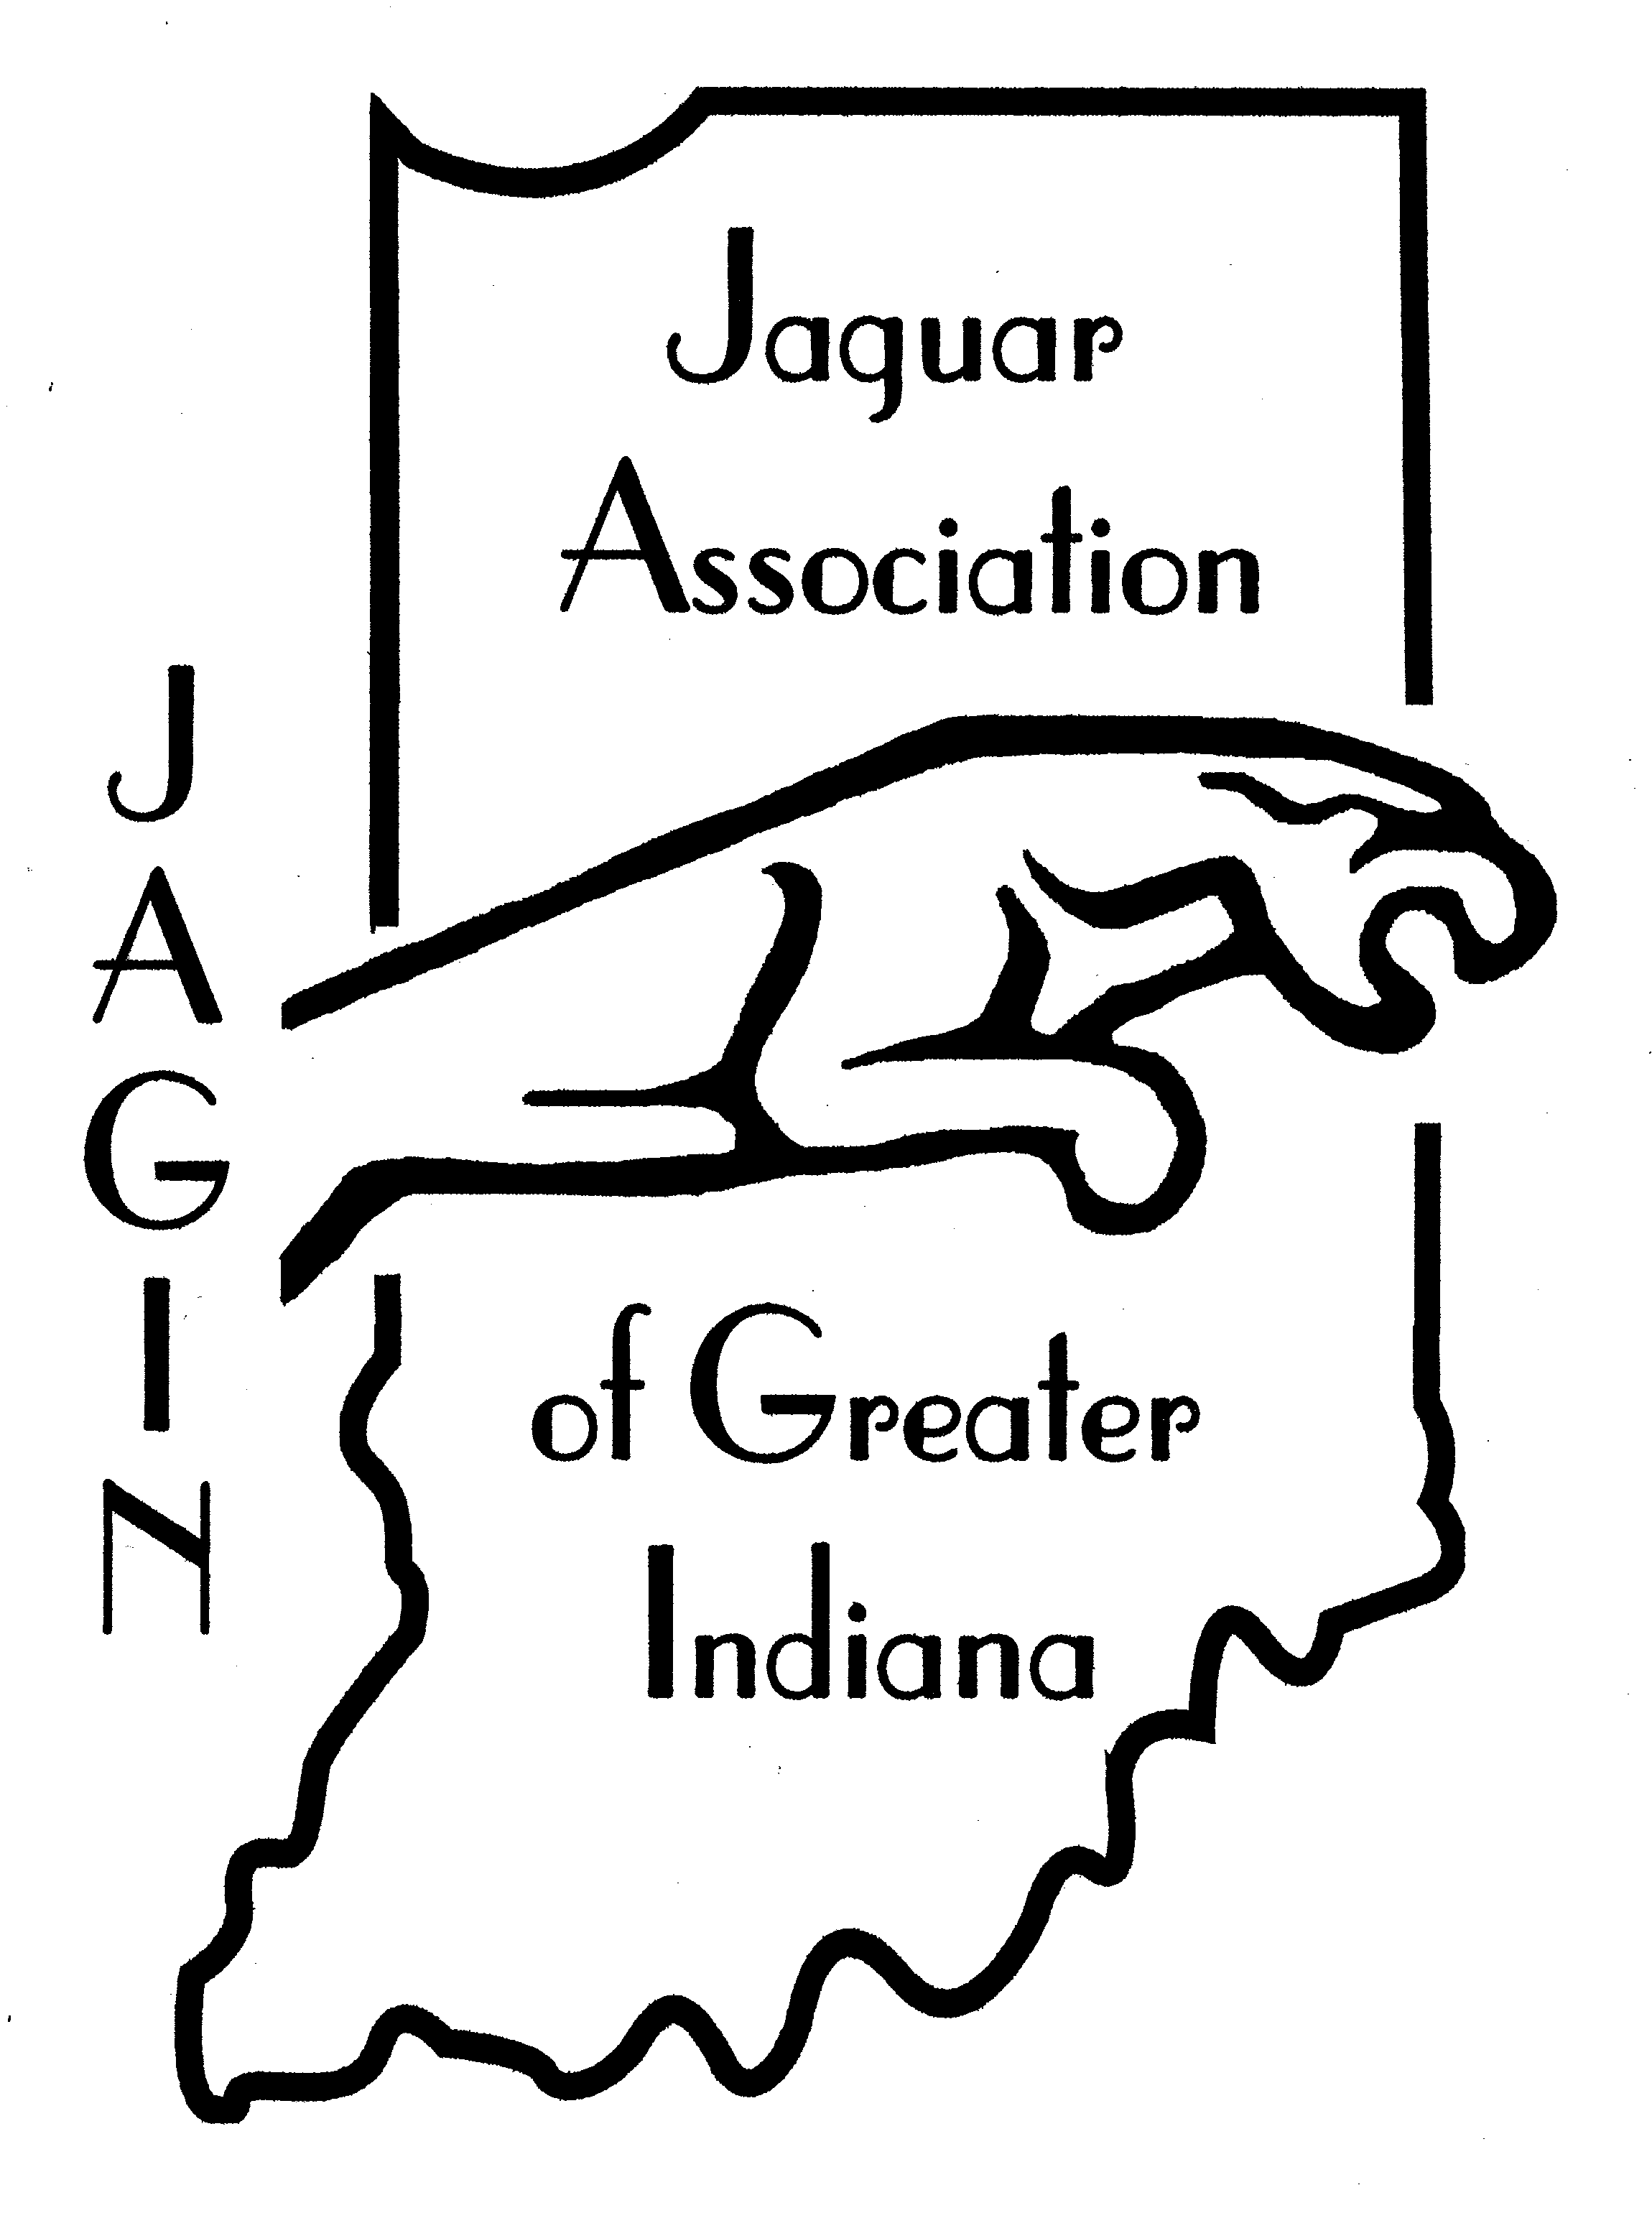 Jaguar Association of Greater Indiana